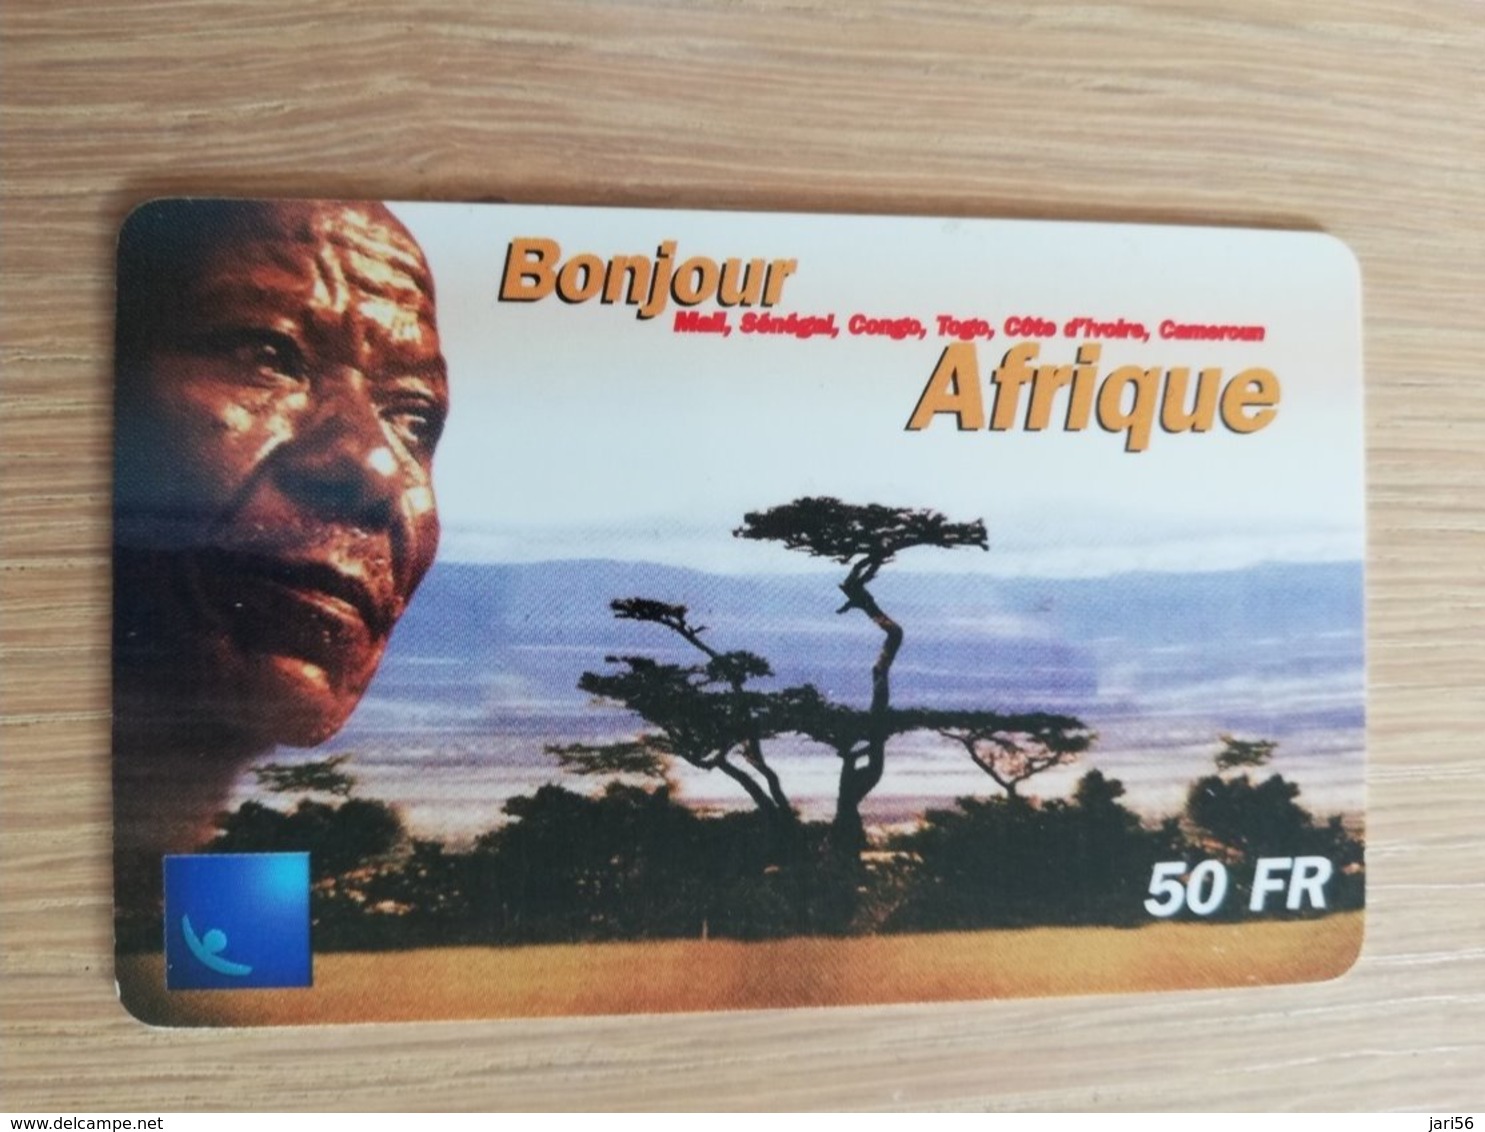 FRANCE/FRANKRIJK  50 FF BONJOUR AFRIQUE    PREPAID  USED    ** 1457** - Voorafbetaalde Kaarten: Gsm